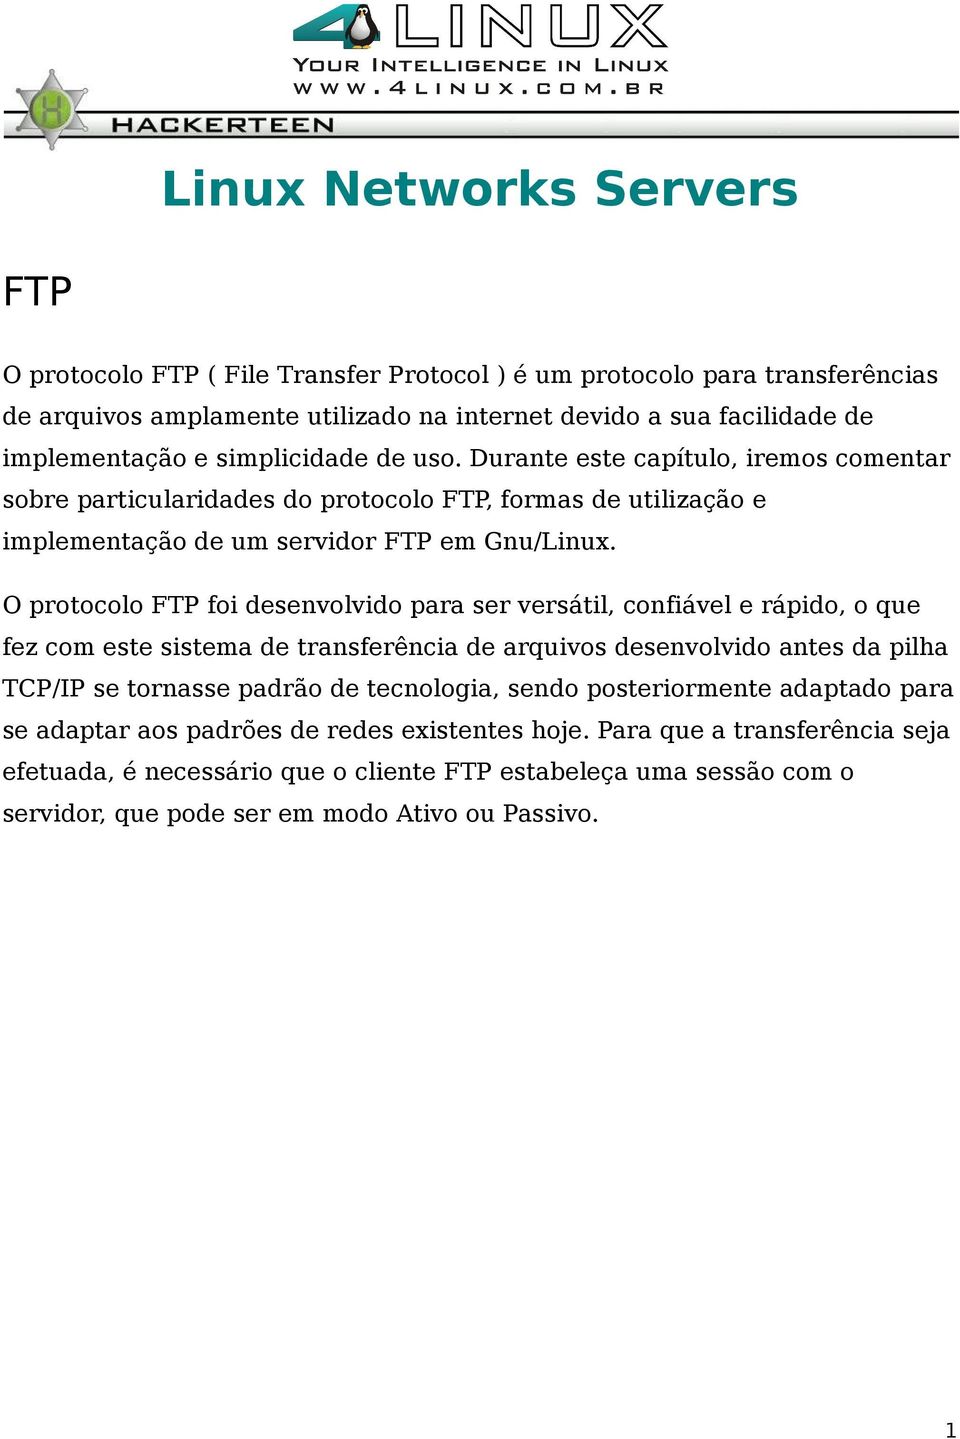 O protocolo FTP foi desenvolvido para ser versátil, confiável e rápido, o que fez com este sistema de transferência de arquivos desenvolvido antes da pilha TCP/IP se tornasse padrão de